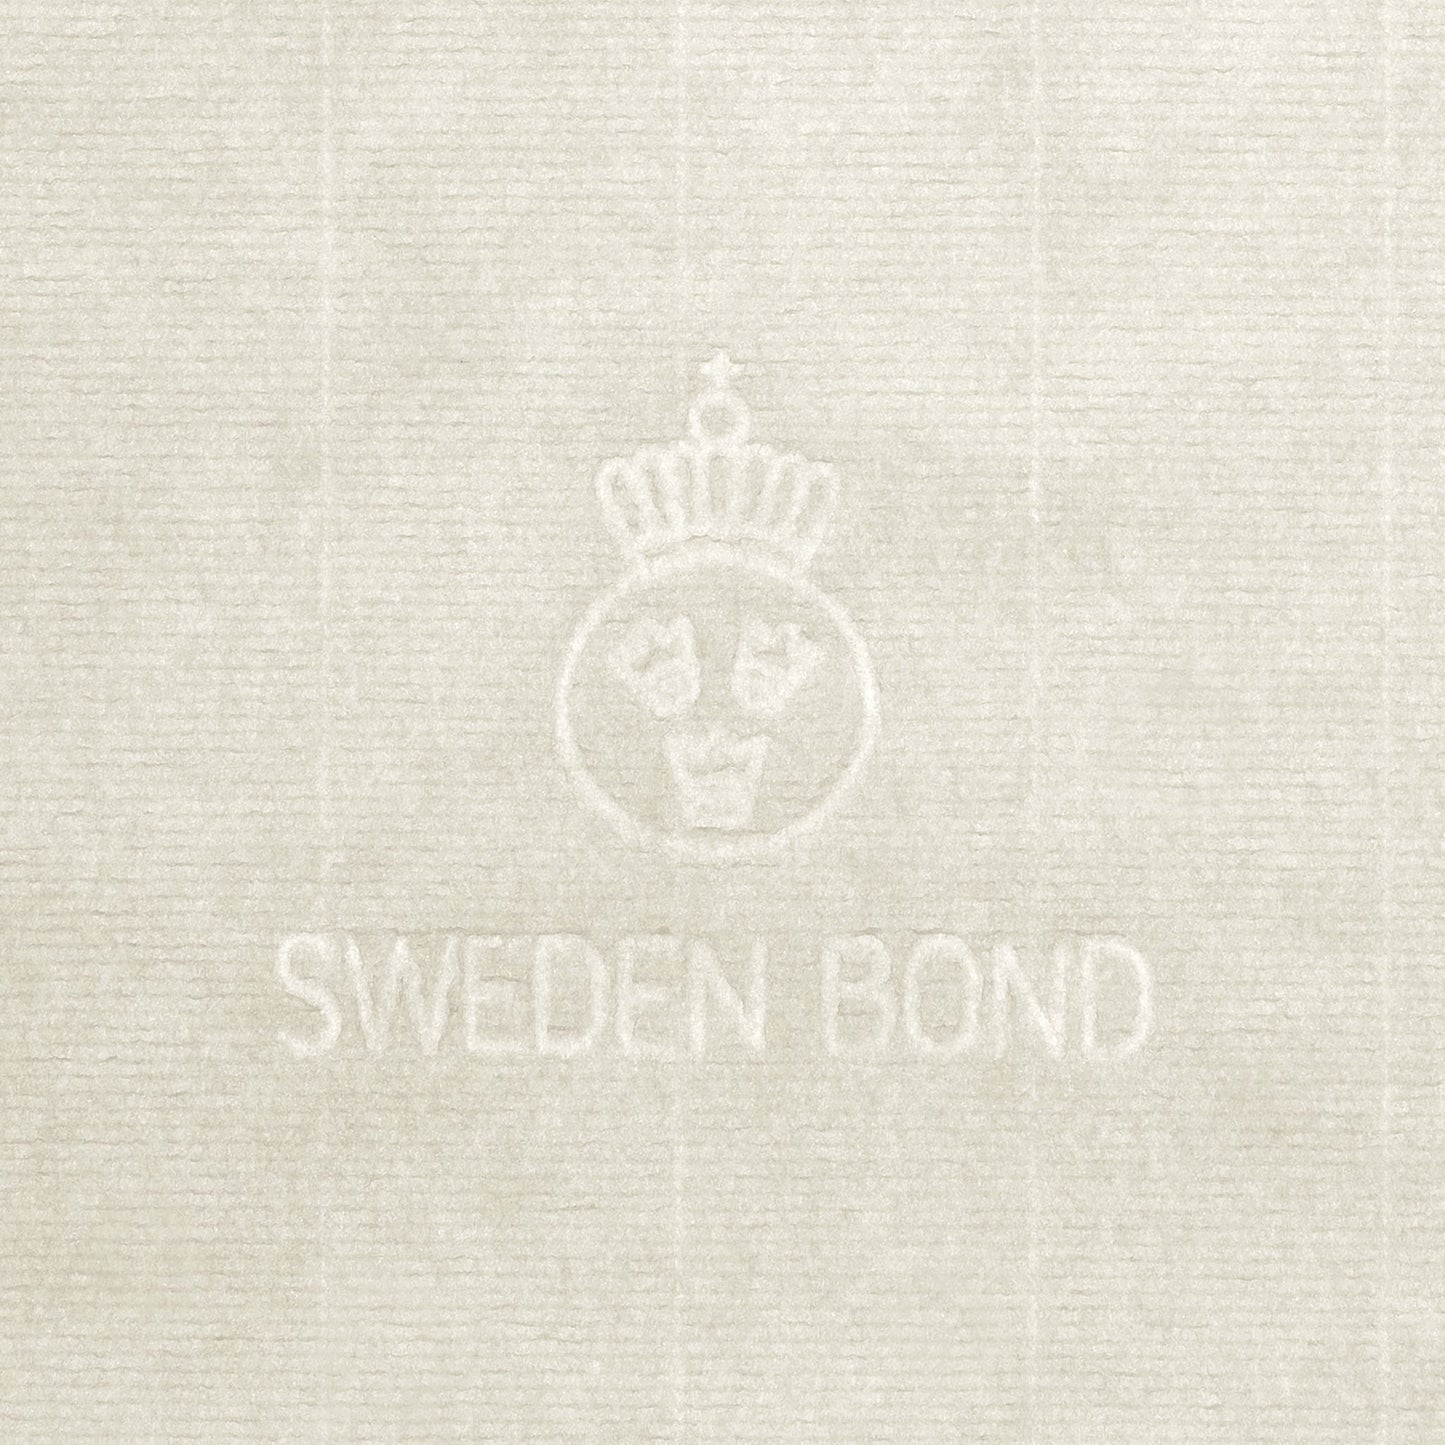 Sweden Bond 90g, A4